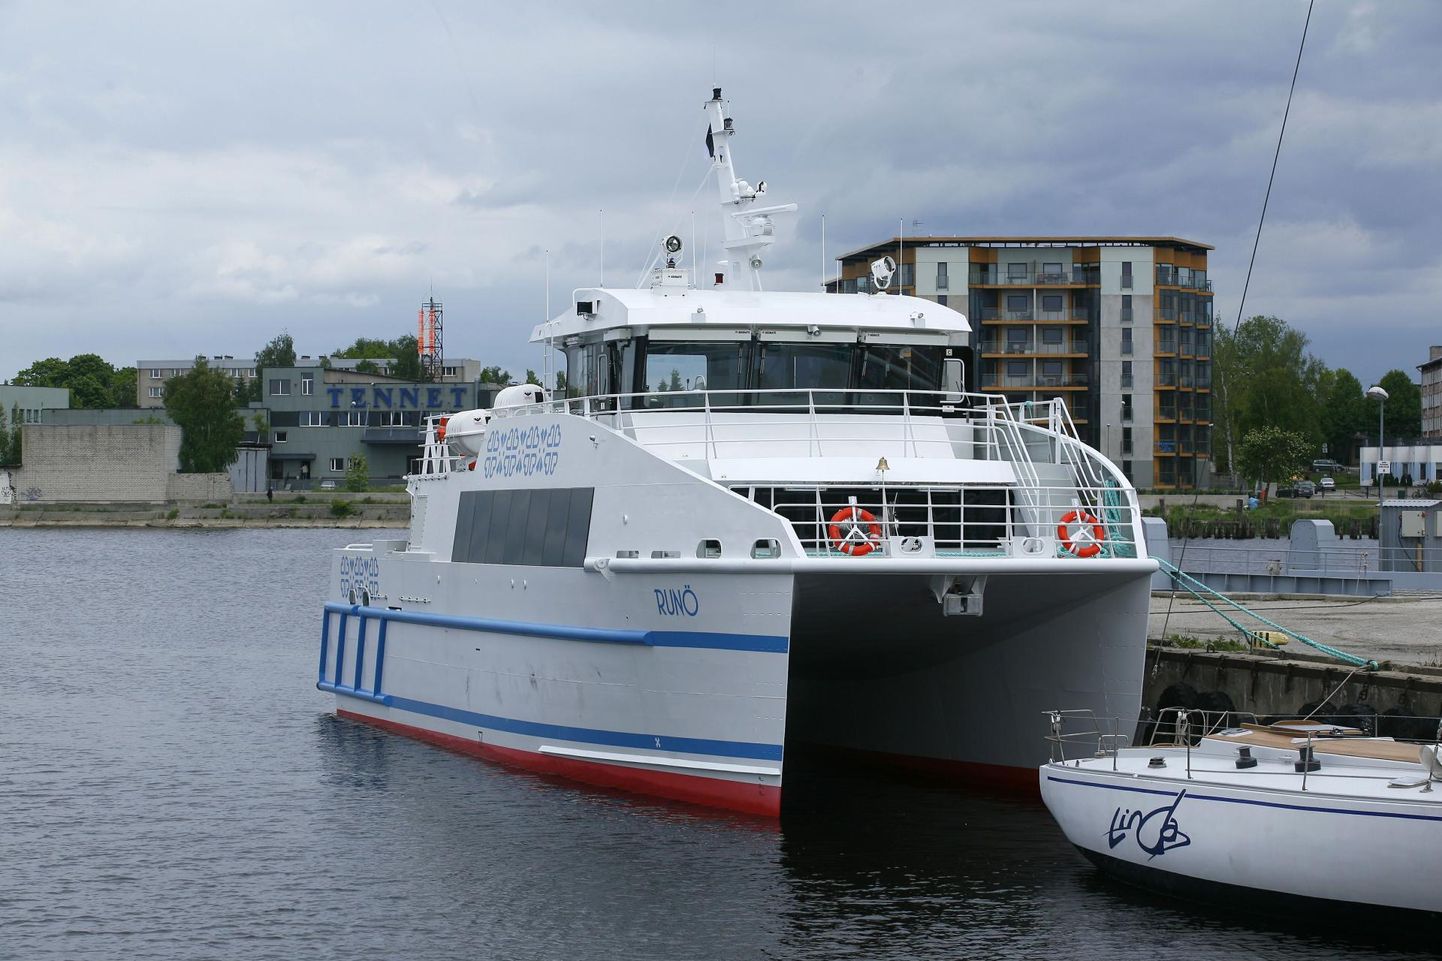 Kui kiirkatamaraan Runö 2012. aastal vette lasti, arvati ekslikult, et ruhnlaste mandrilepääsemise mured on murtud.